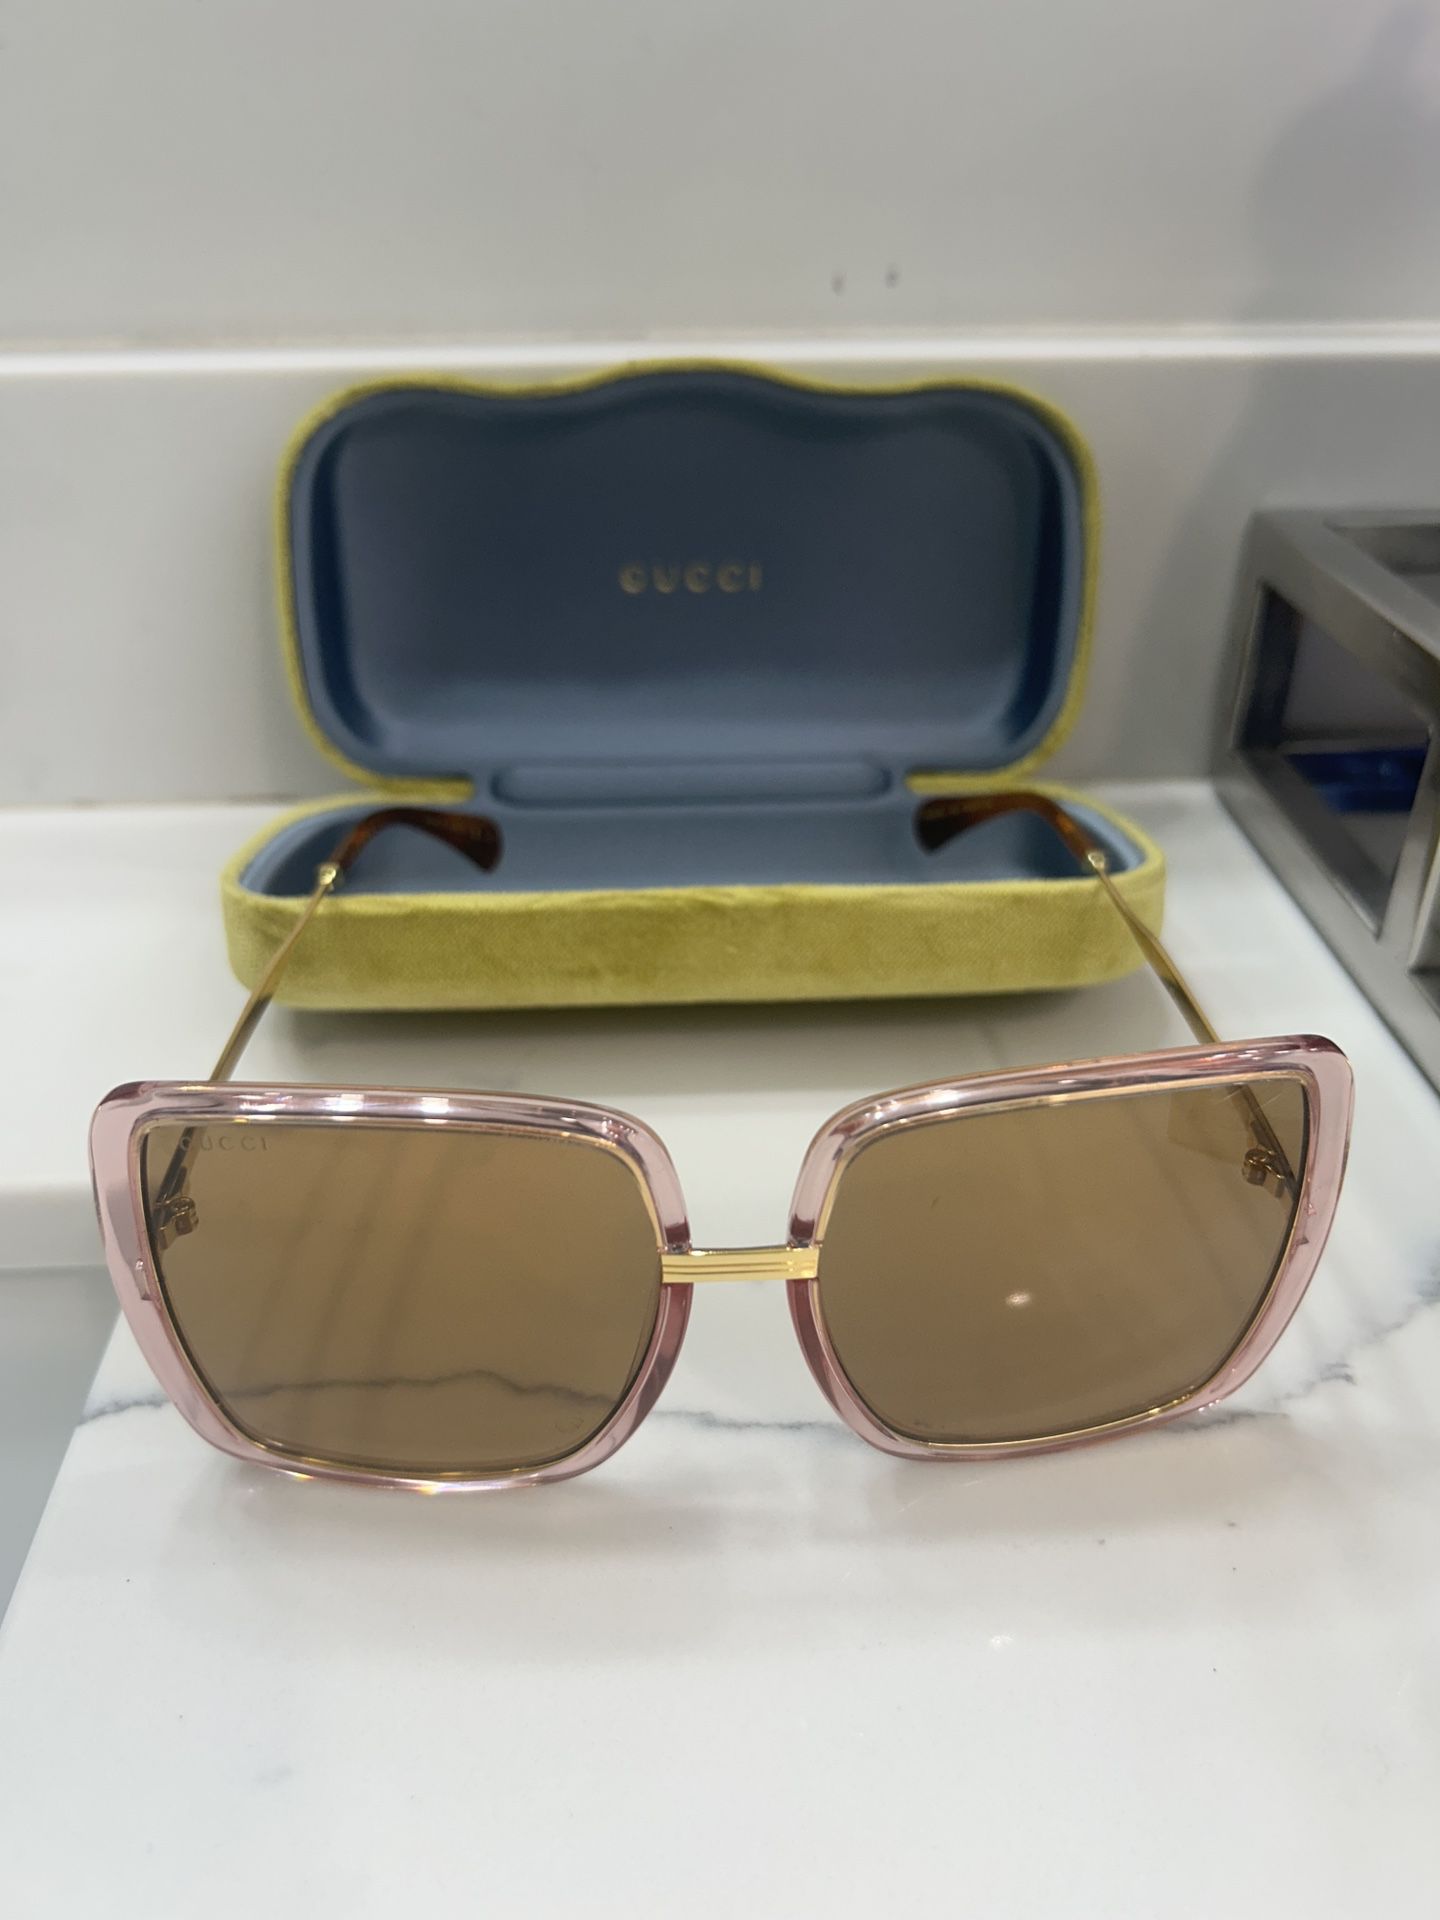 BRAND NEW Gucci Sunglasses